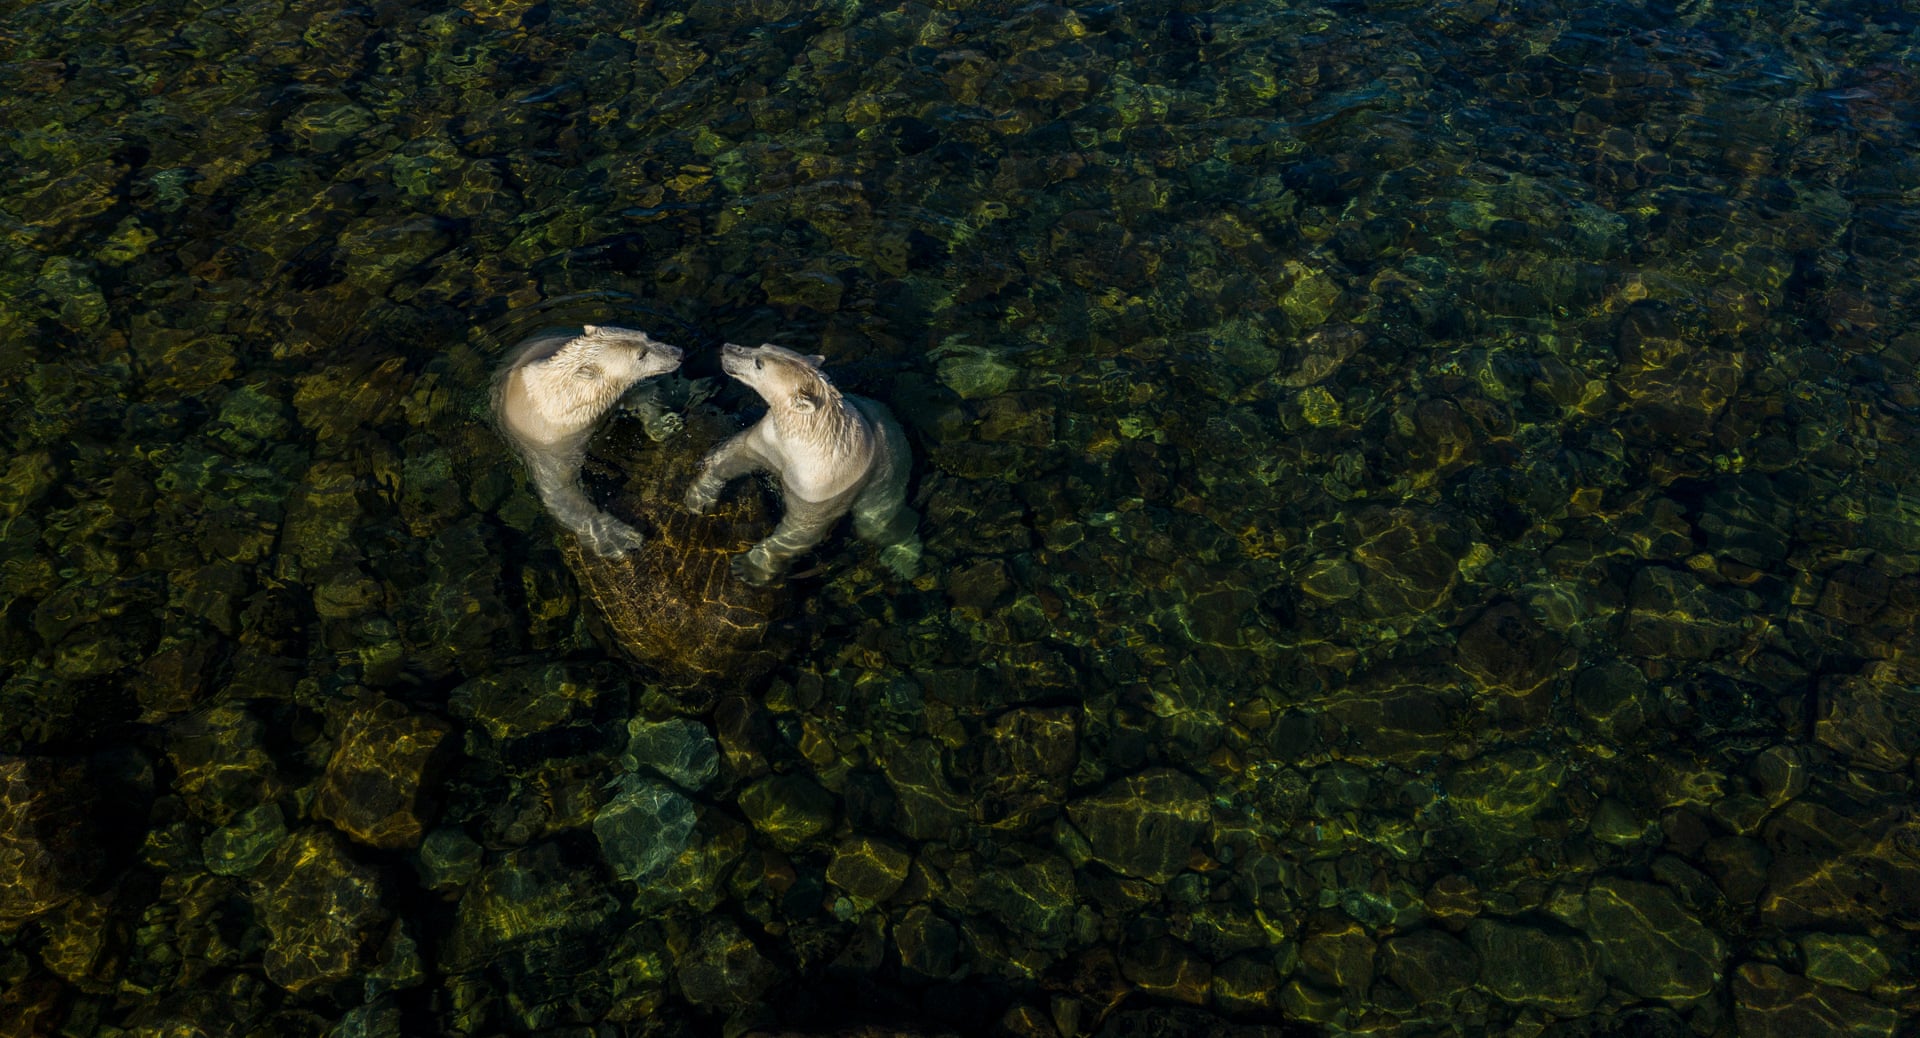 "Прохладное время с суши для морских медведей". Автор: Мартин Грегус, Канада